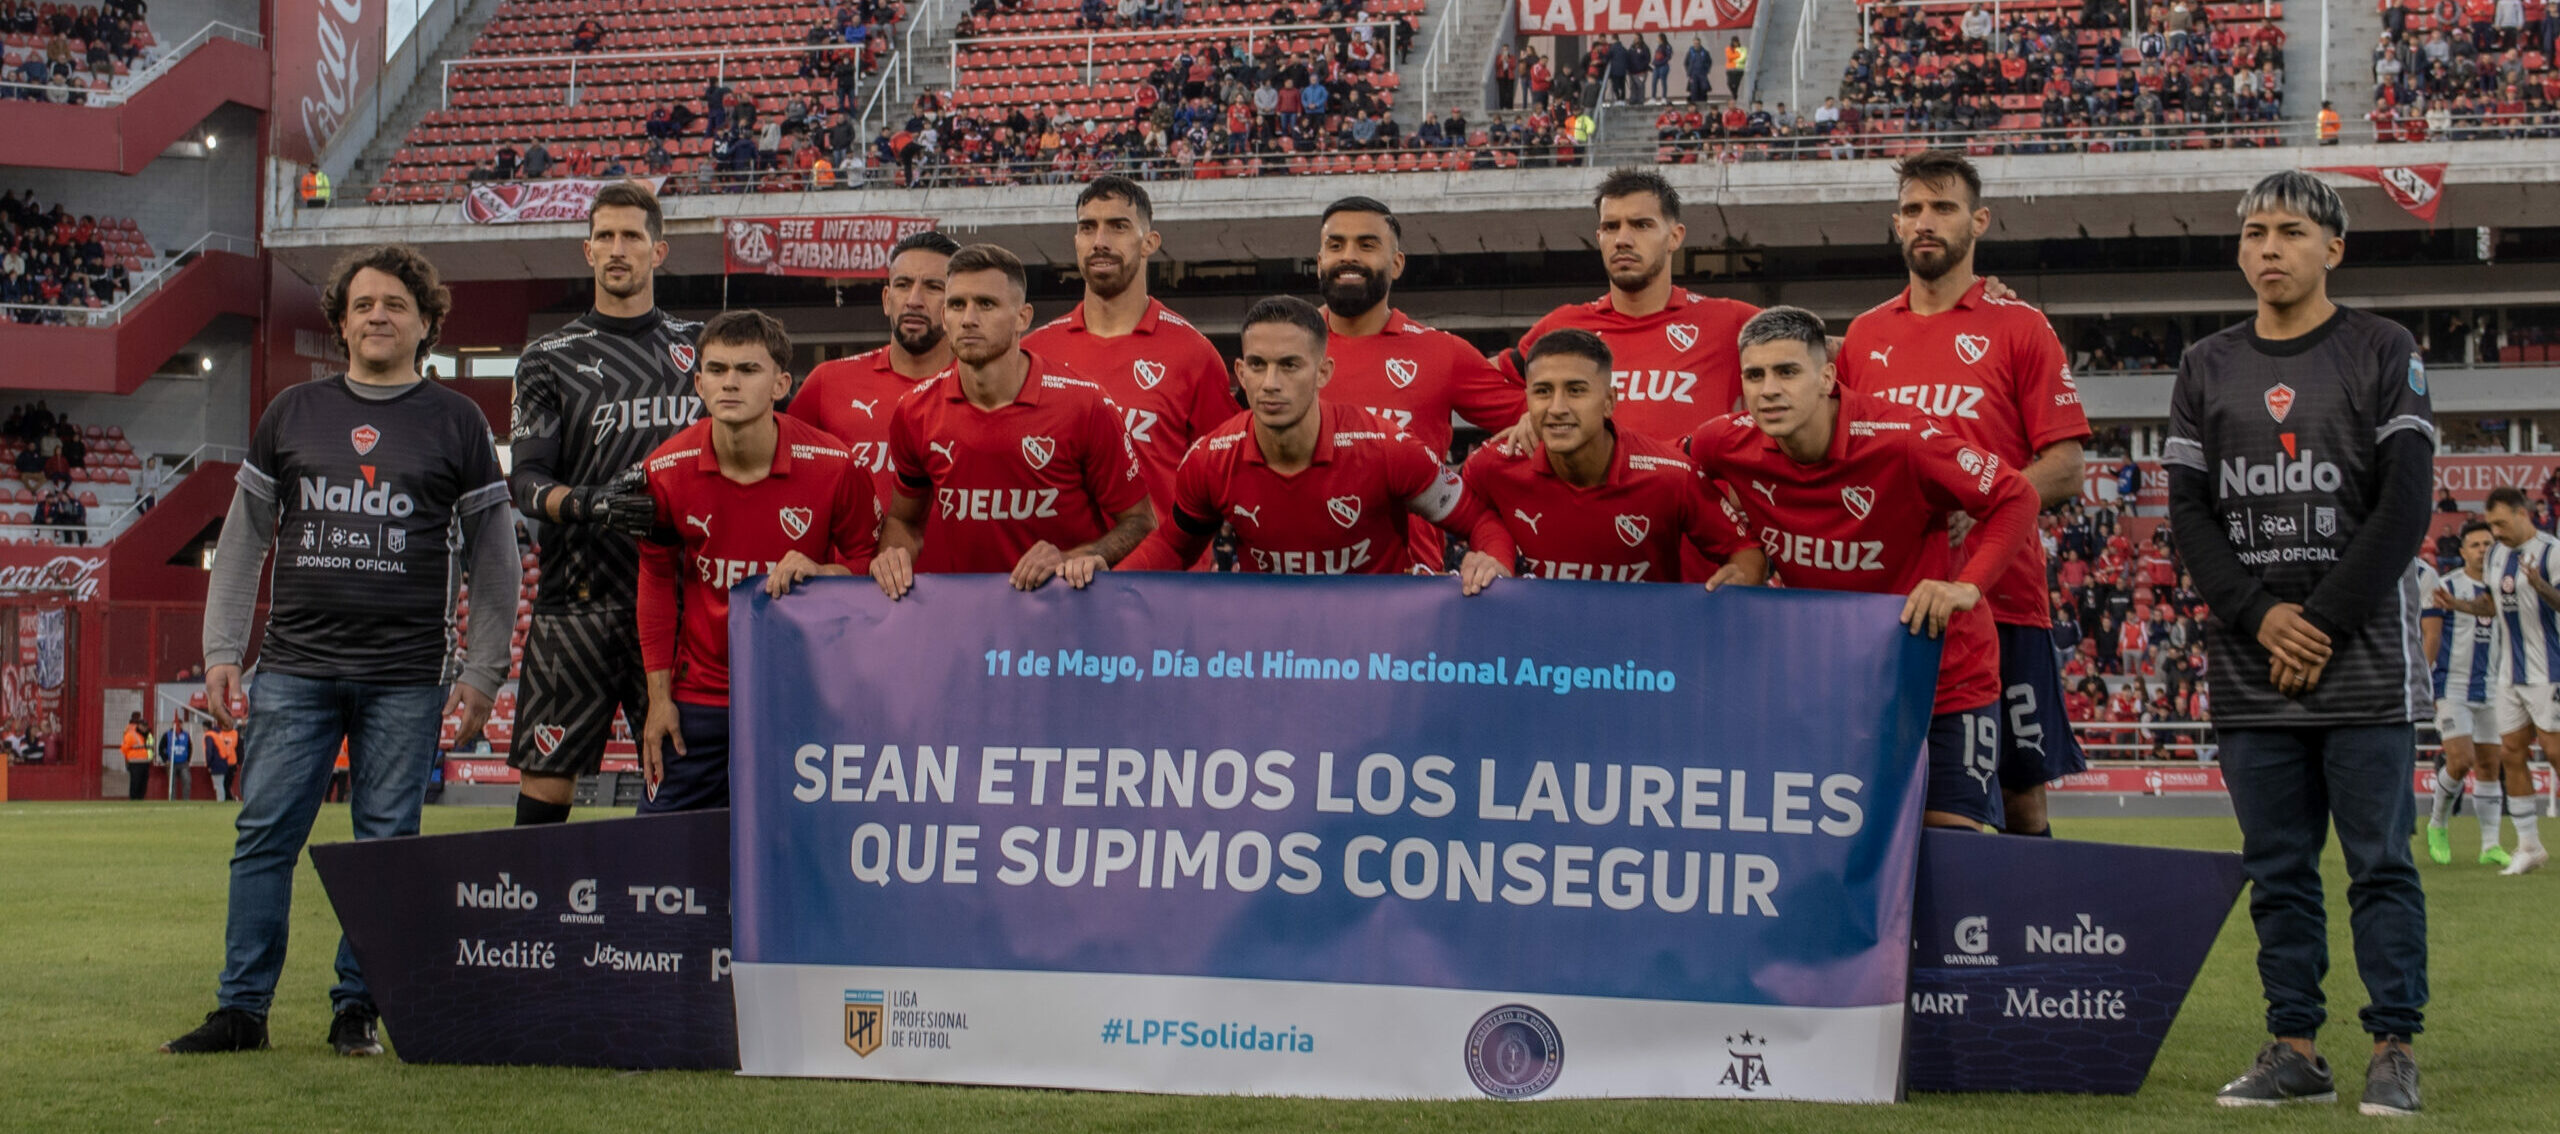 Independiente perdió en el debut ante Talleres. (ph.arita)